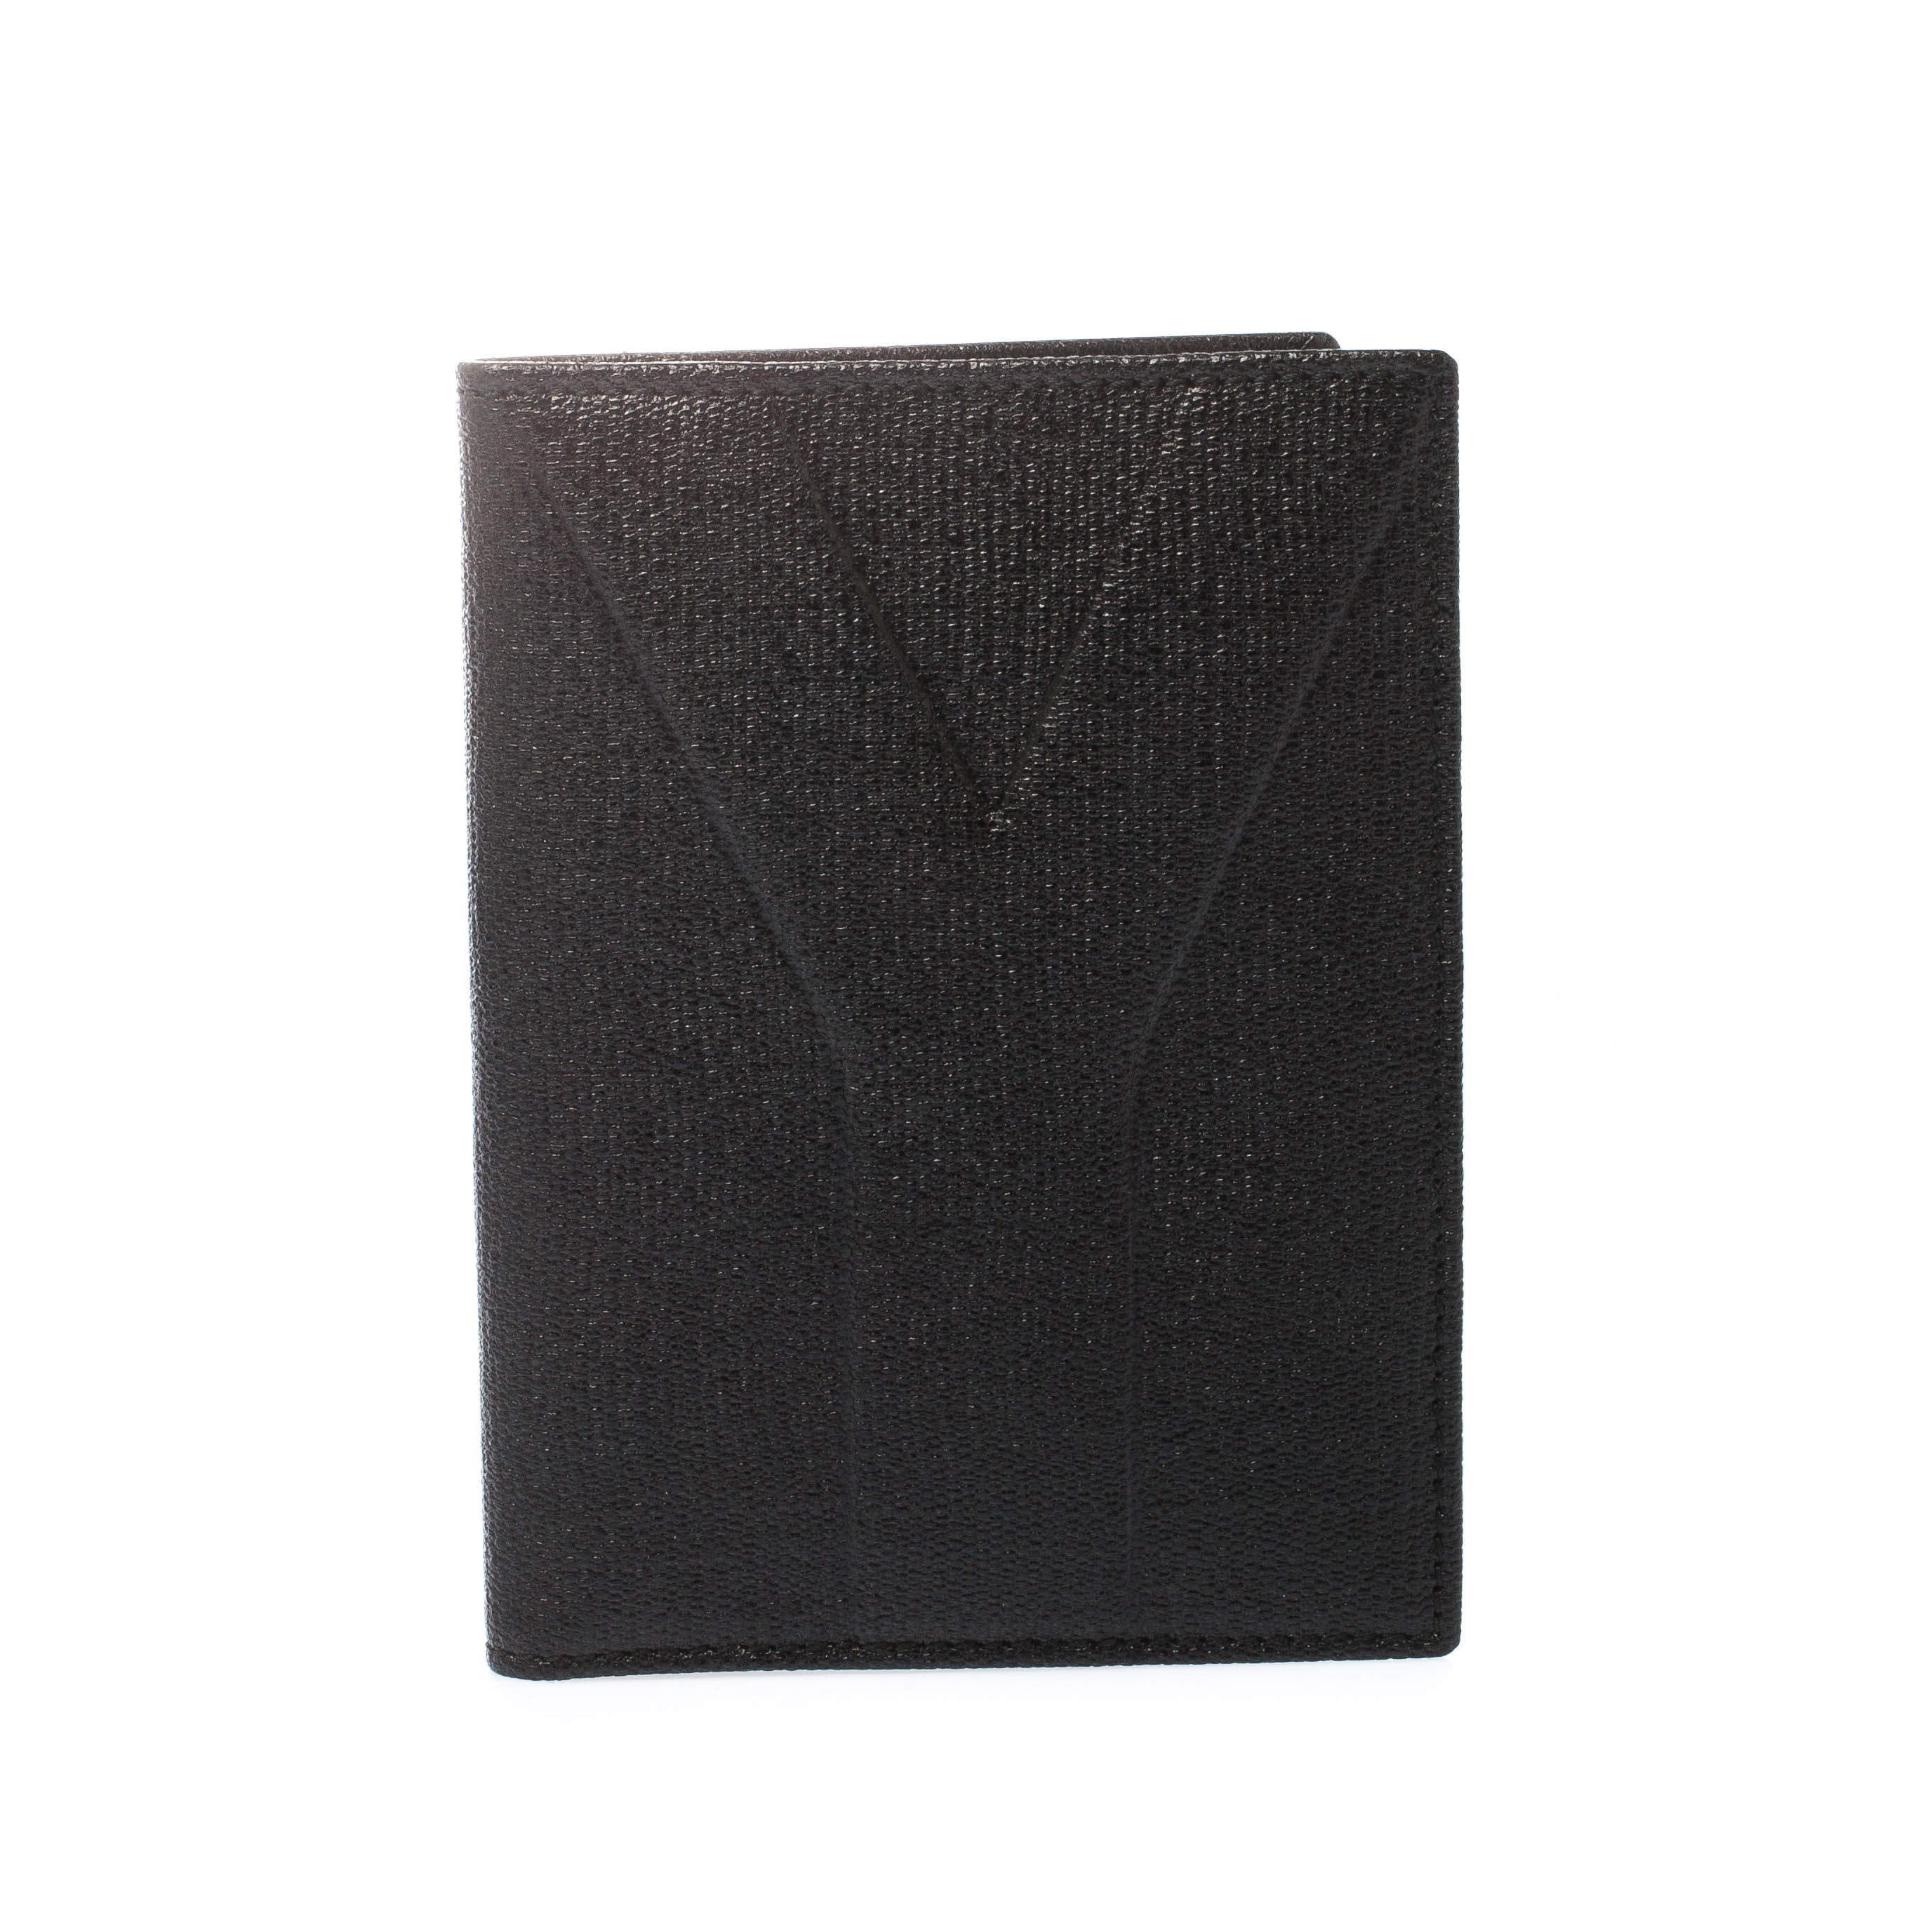 Saint Laurent Paris Black Leather Bifold Wallet